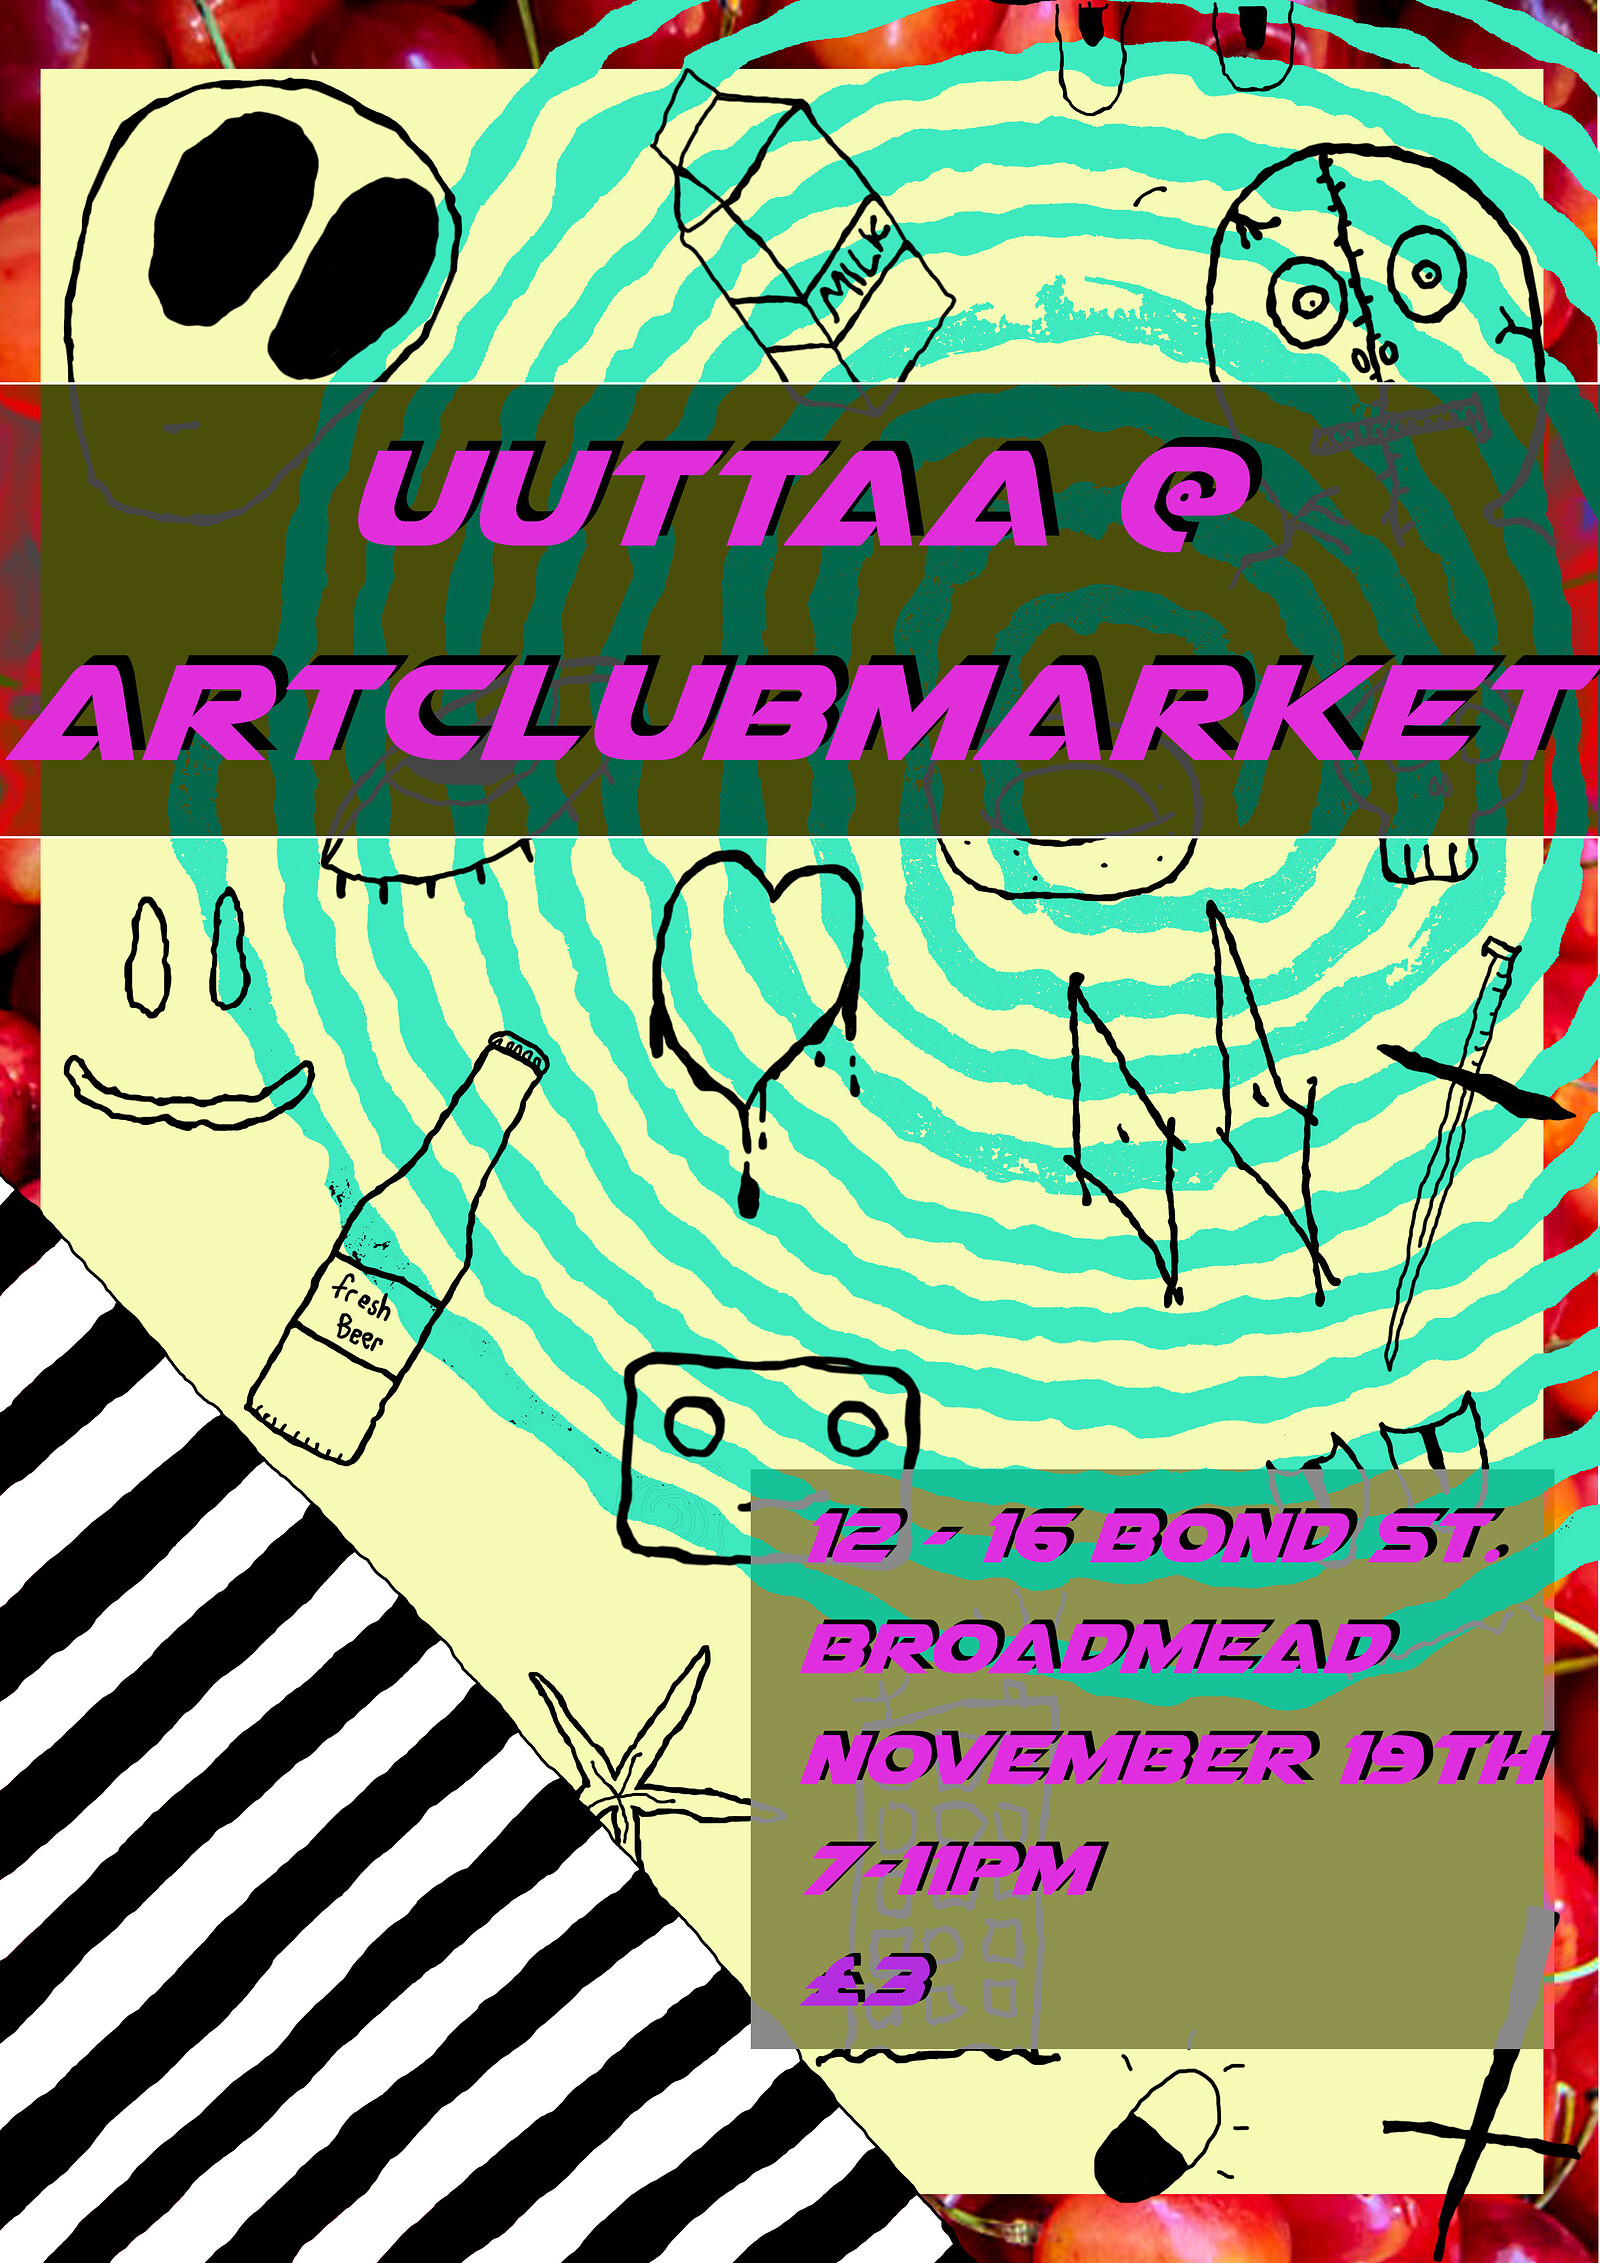 UUTTAA at Art Club Market